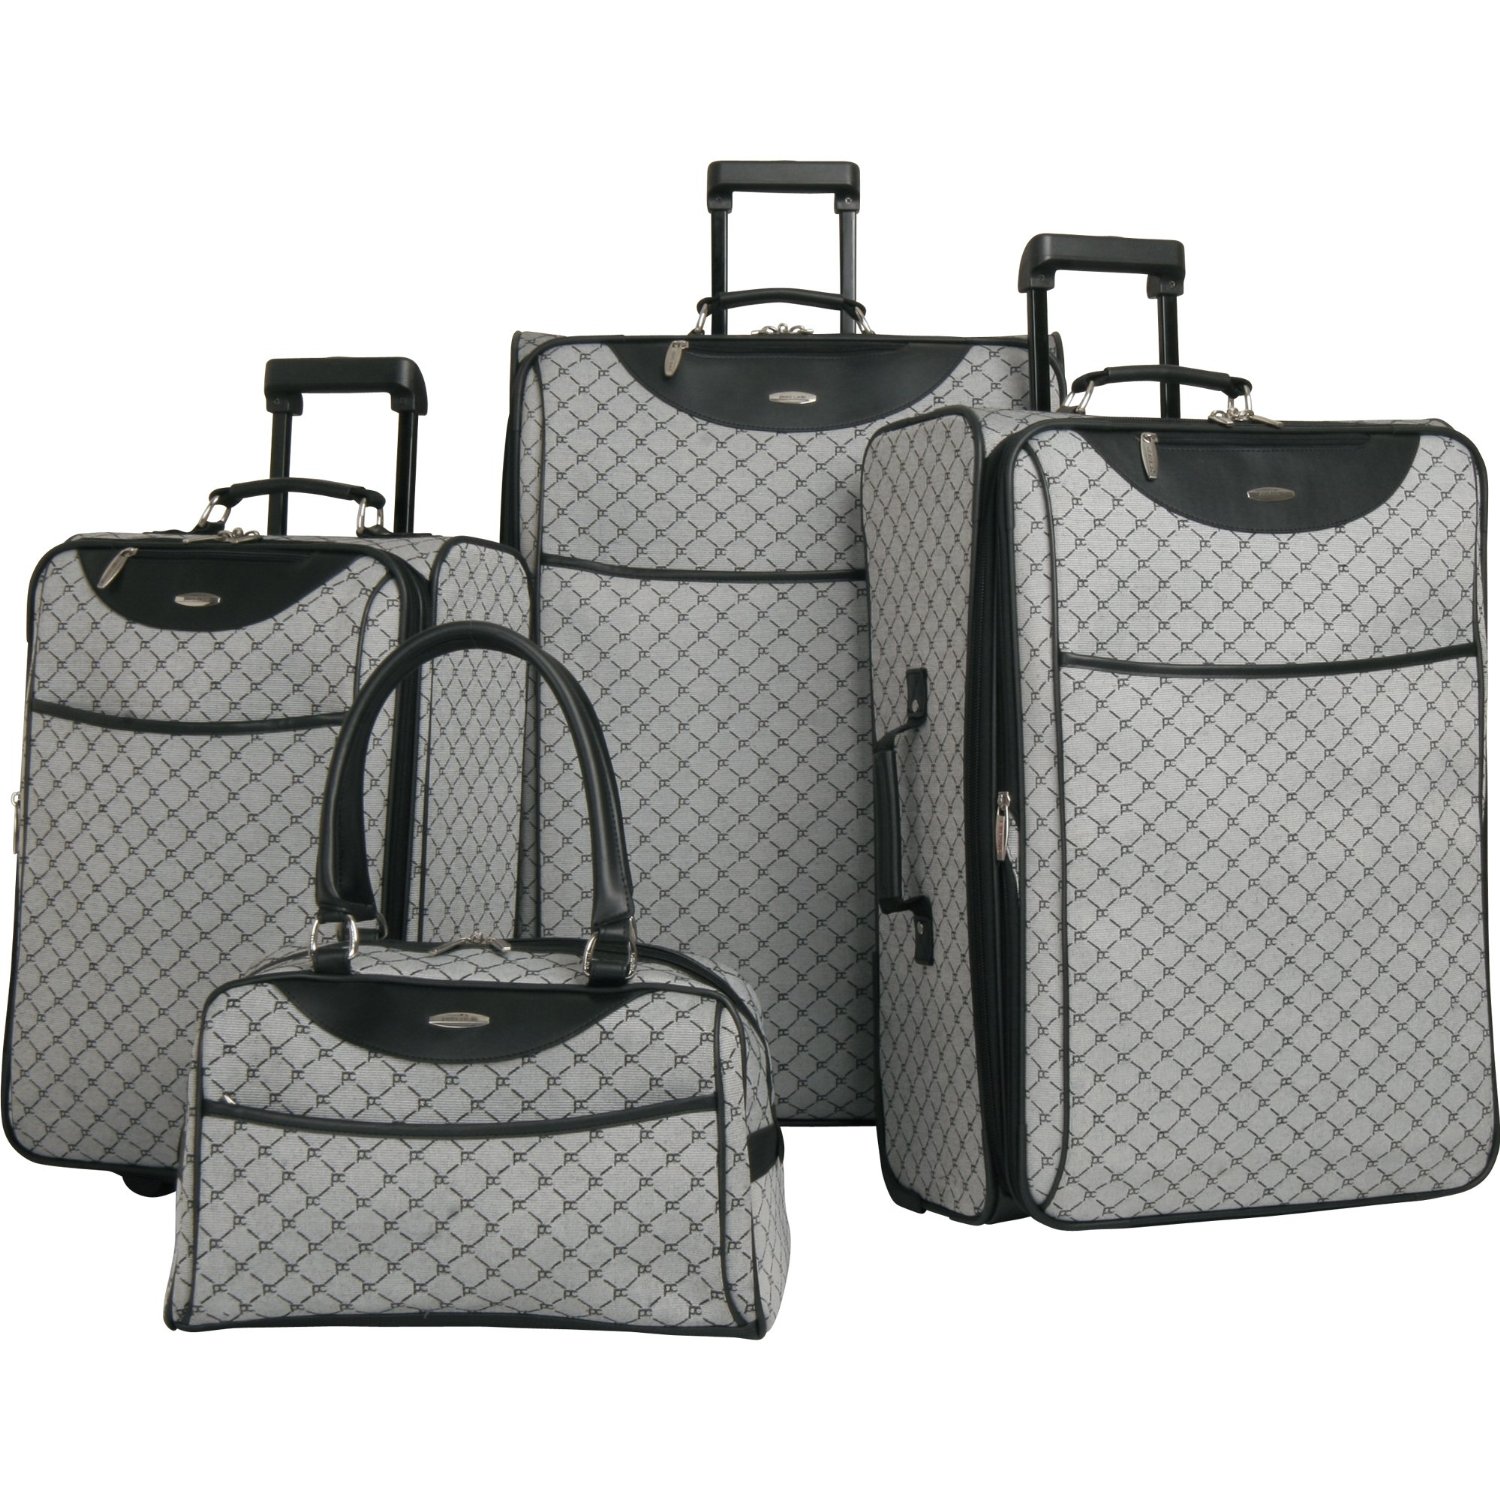 皮尔-卡丹 Pierre Cardin Luggage Pc Signature 经典款4件套行李箱 (灰色款)  $144.99 